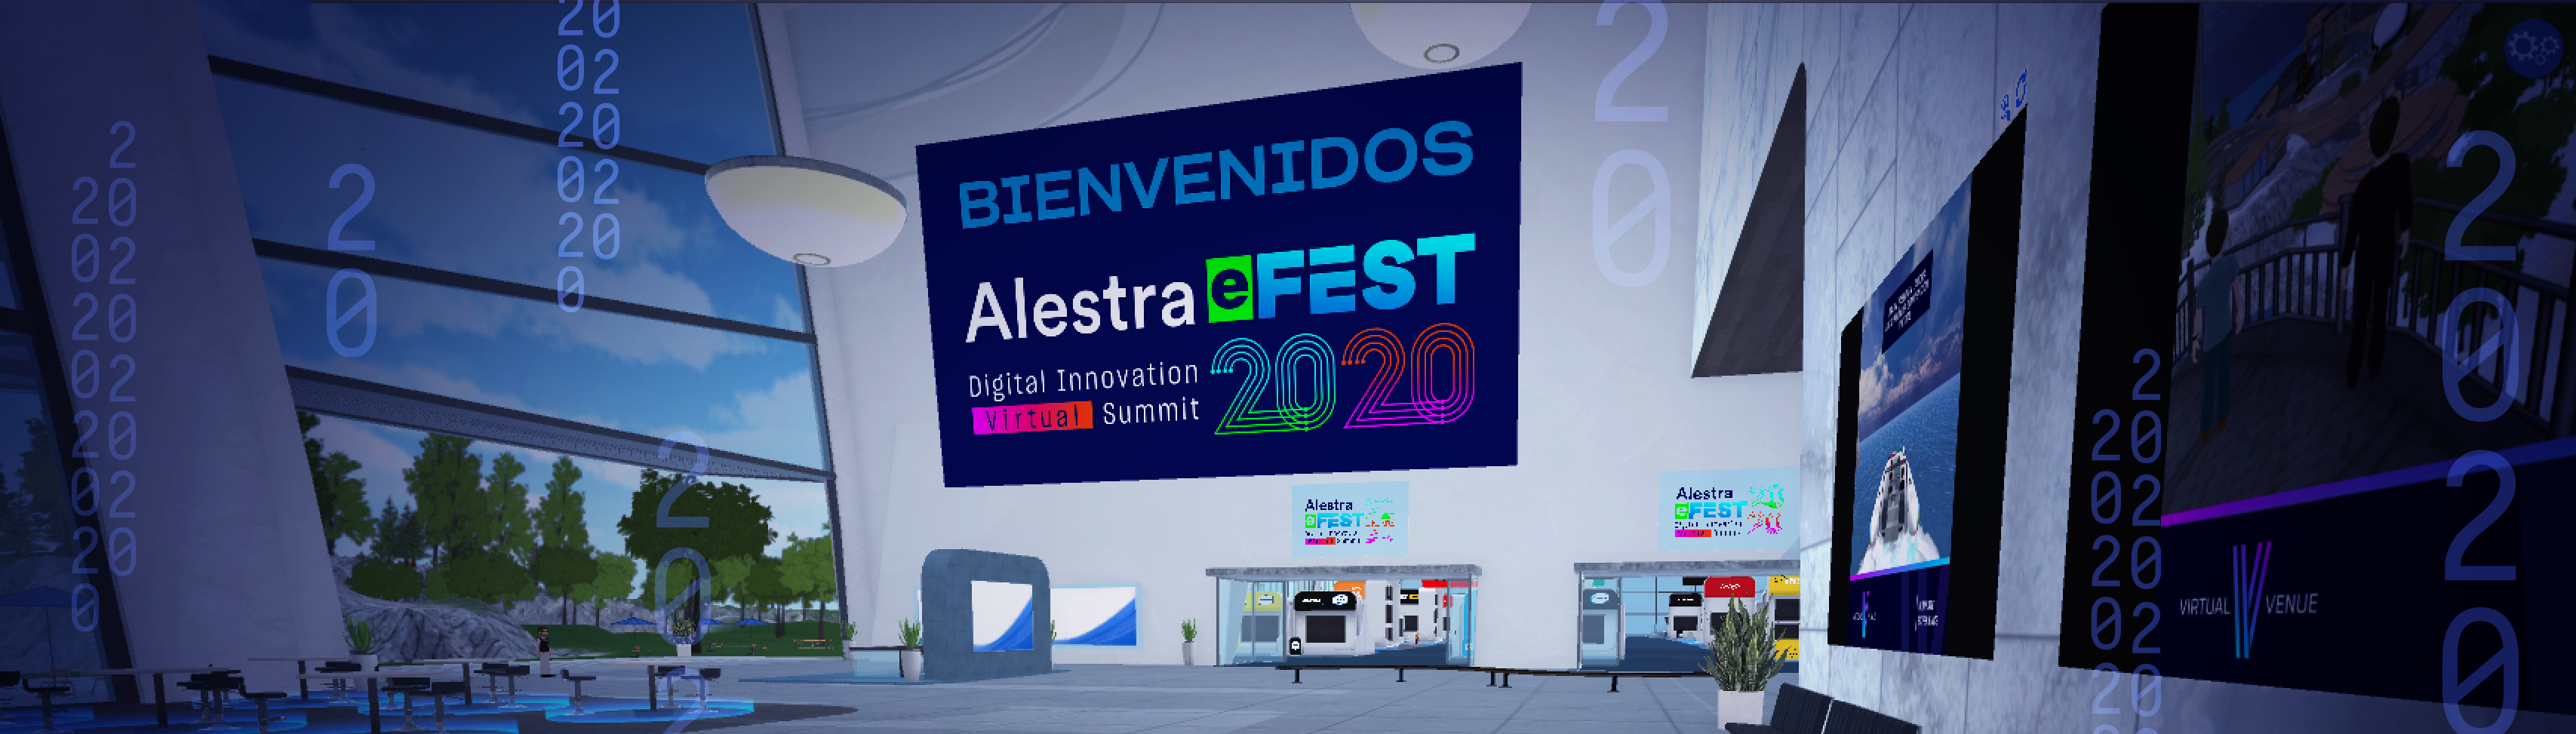 La gira de innovación digital más importante de México llega de forma virtual: Alestra eFest